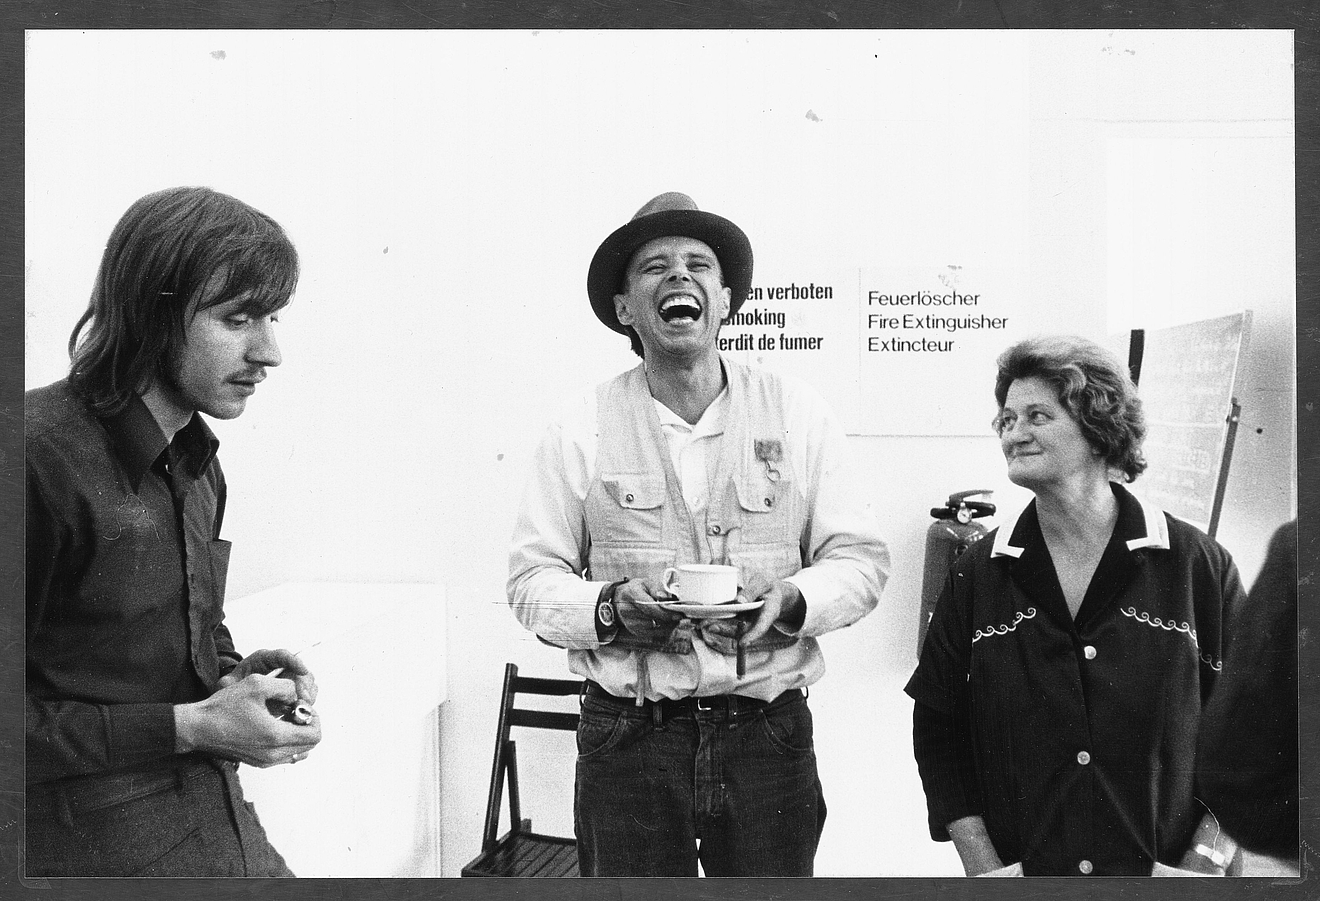 Schwarz-Weiß-Fotografie mit einem lachenden Joseph Beuys